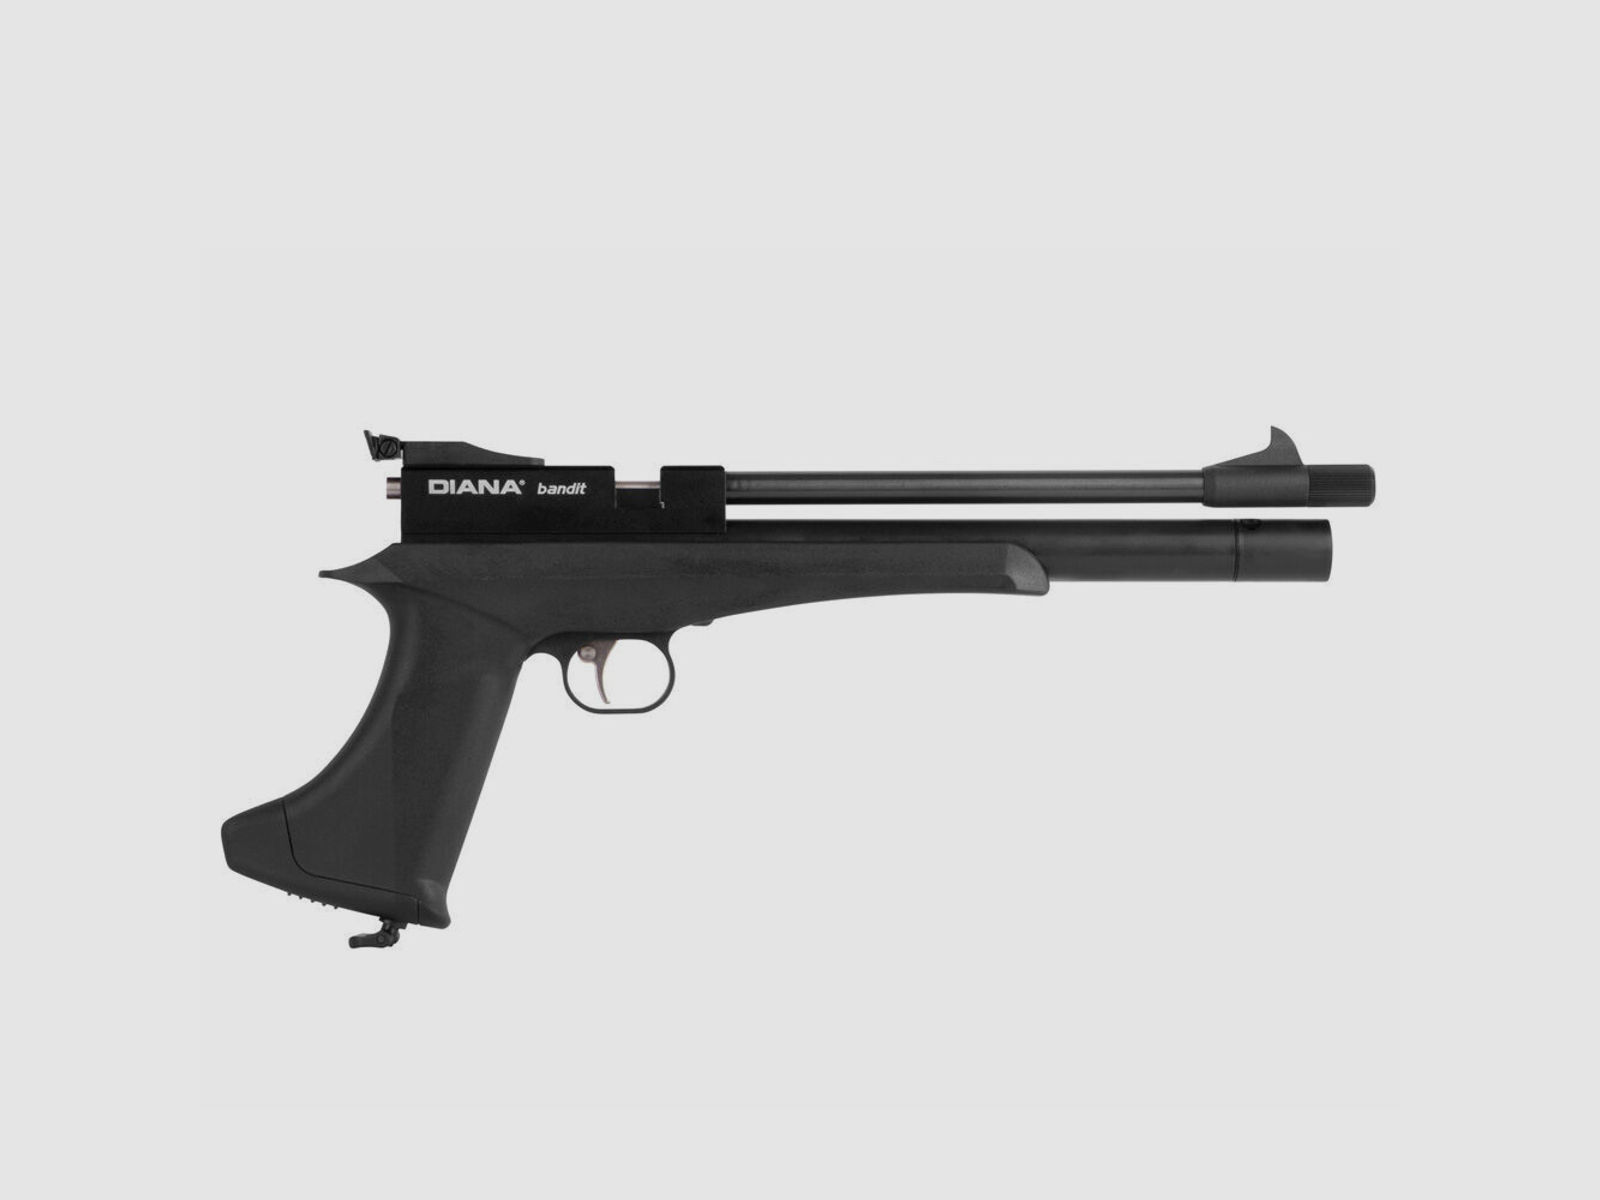 Diana Bandit Black Pressluftpistole 4,5mm Diabolos Supertarget Set